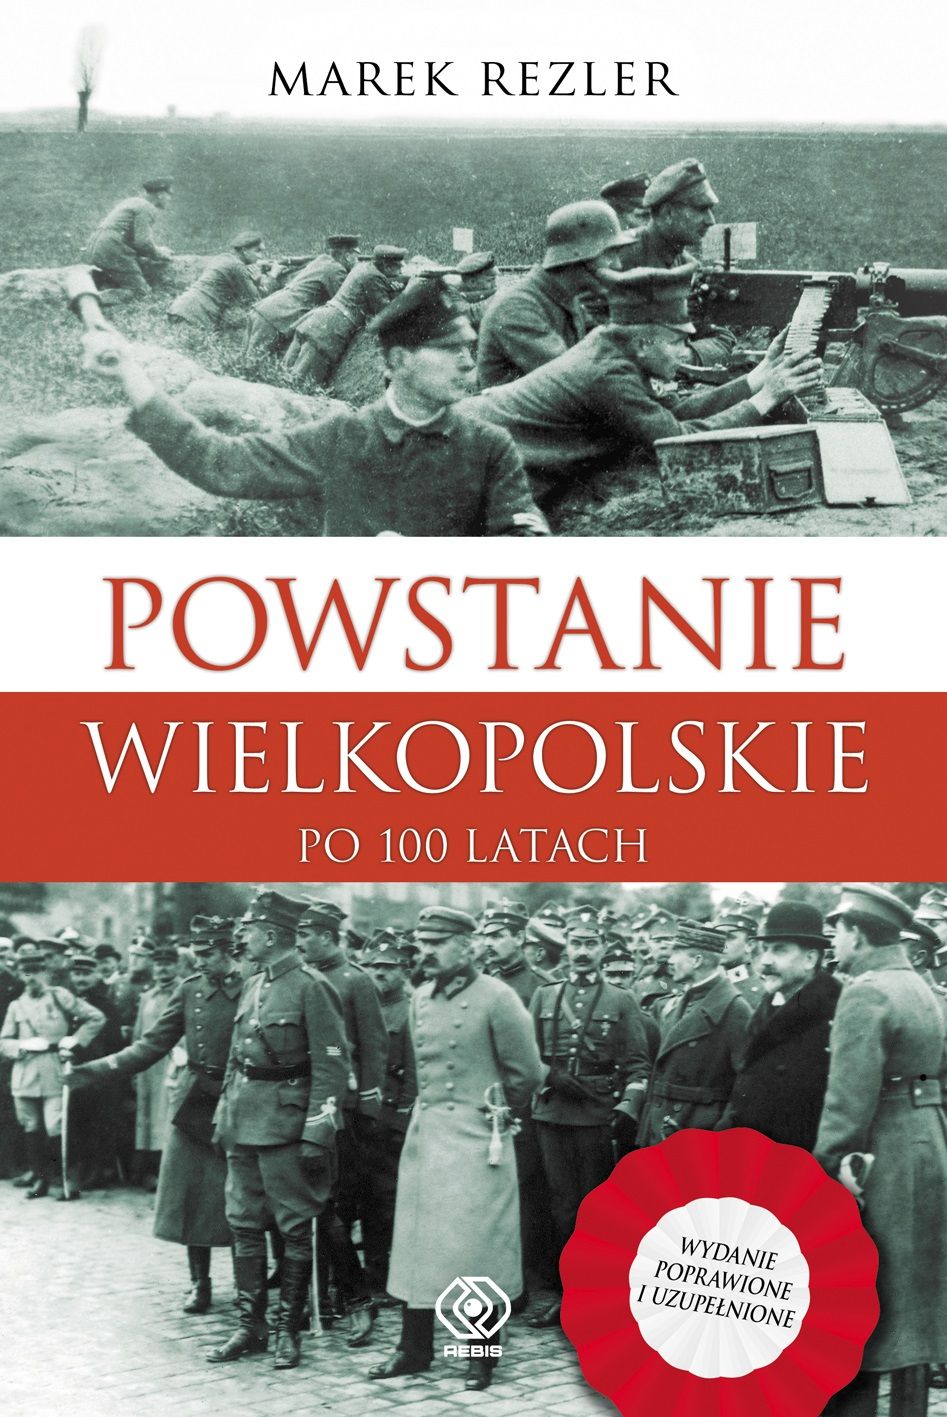 "Powstanie Wielkopolskie. Po 100 latach" ,  Marek Rezler, 